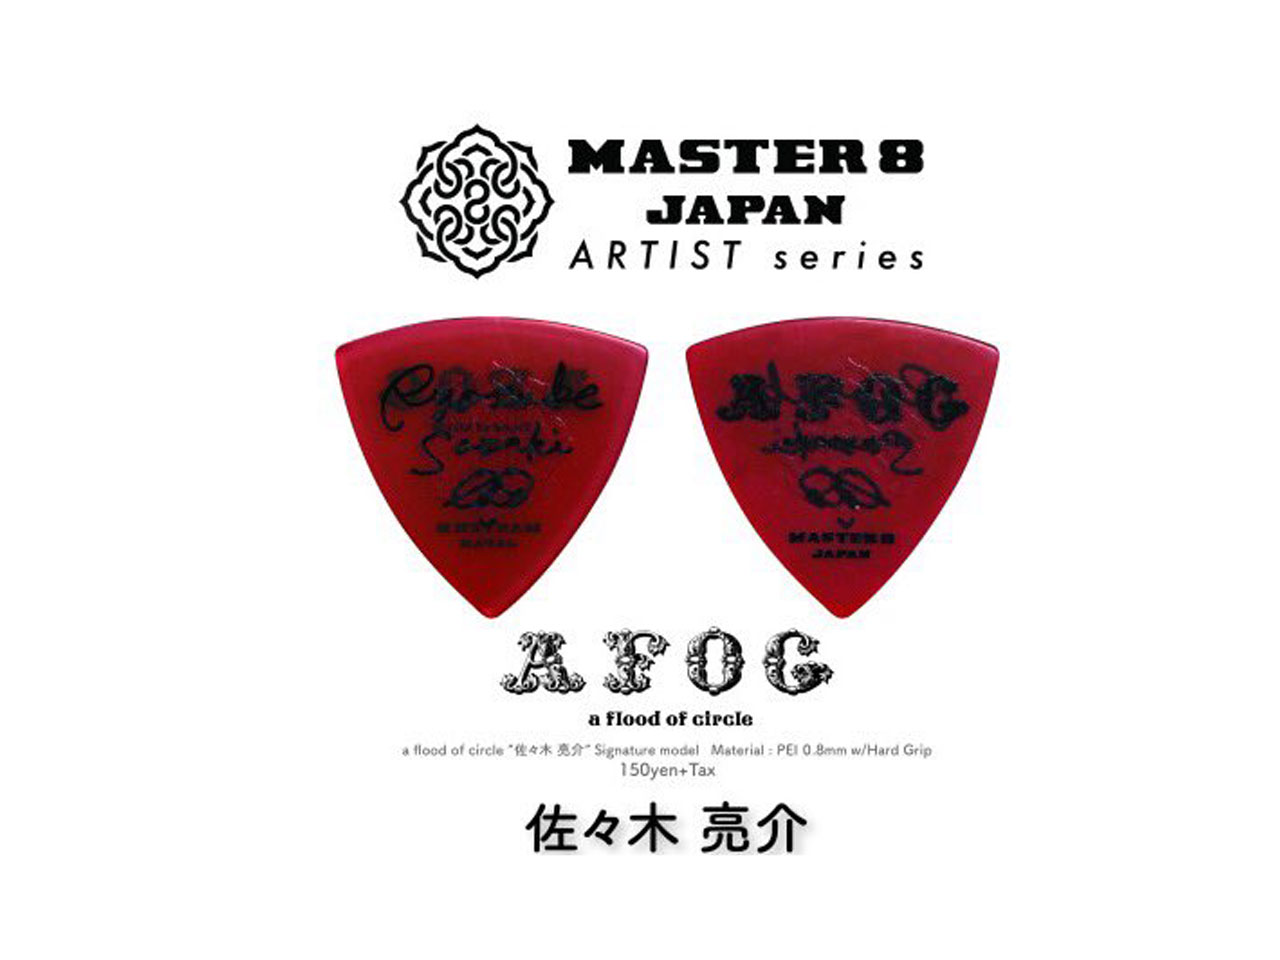 MASTER 8 JAPAN(マスターエイトジャパン) a flood of circle / 佐々木亮介 signature model 10枚セット